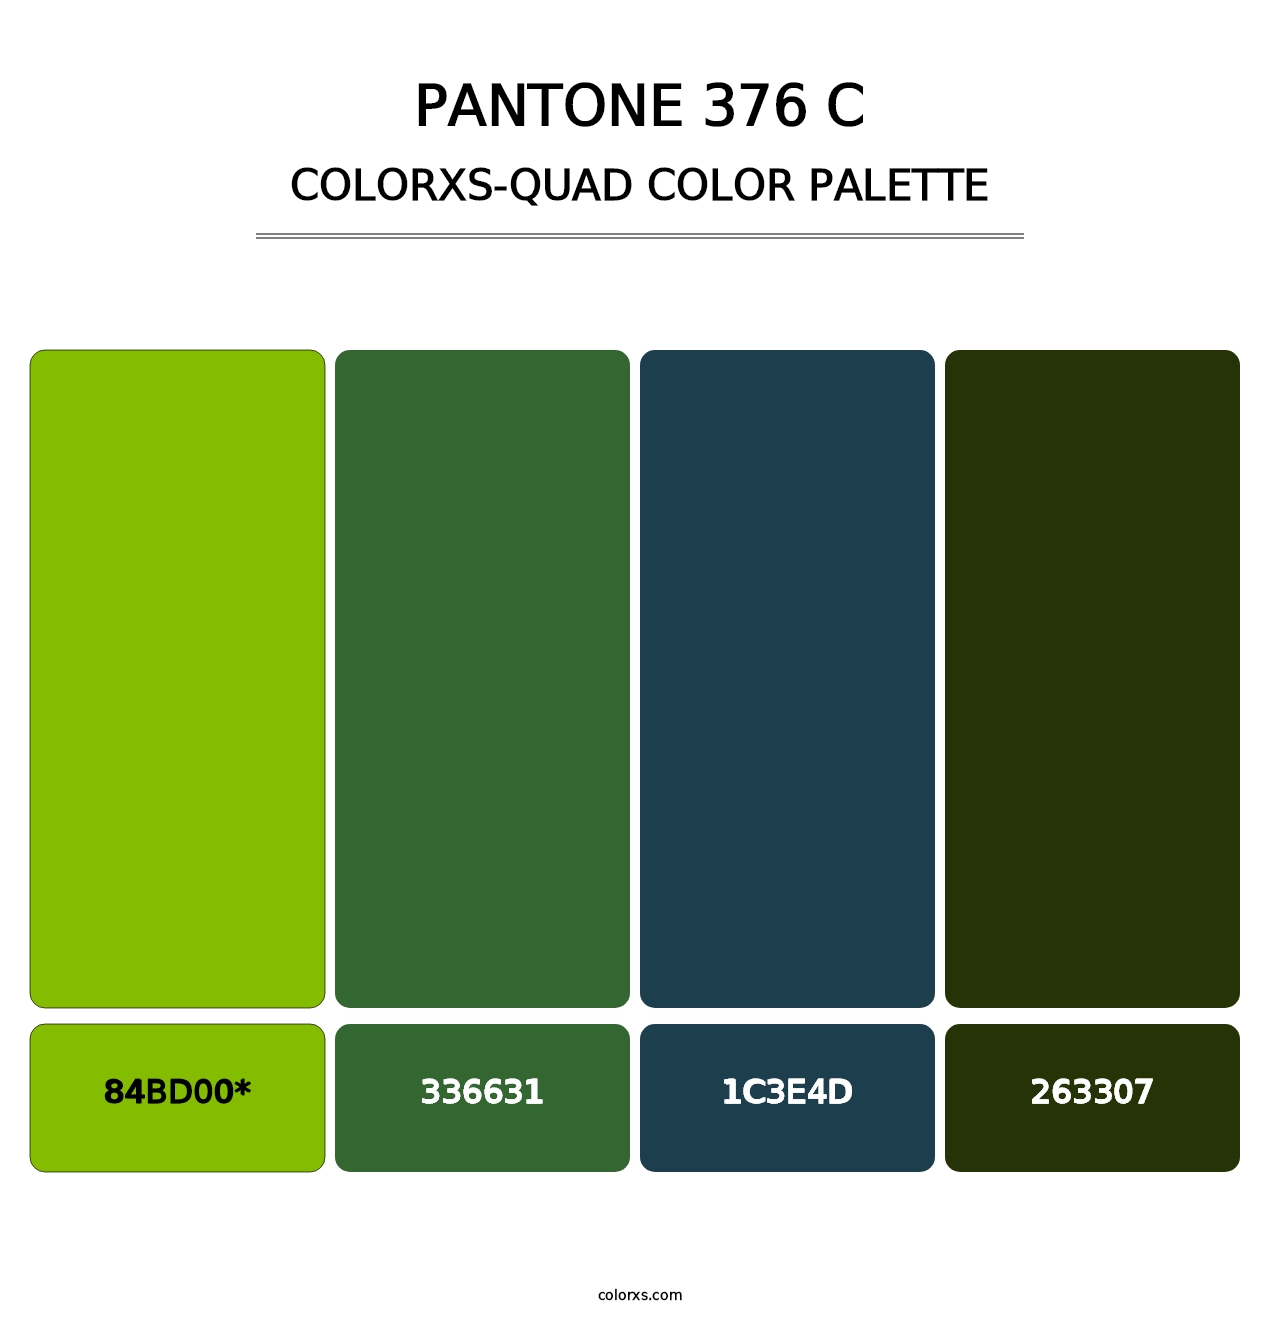 PANTONE 376 C - Colorxs Quad Palette